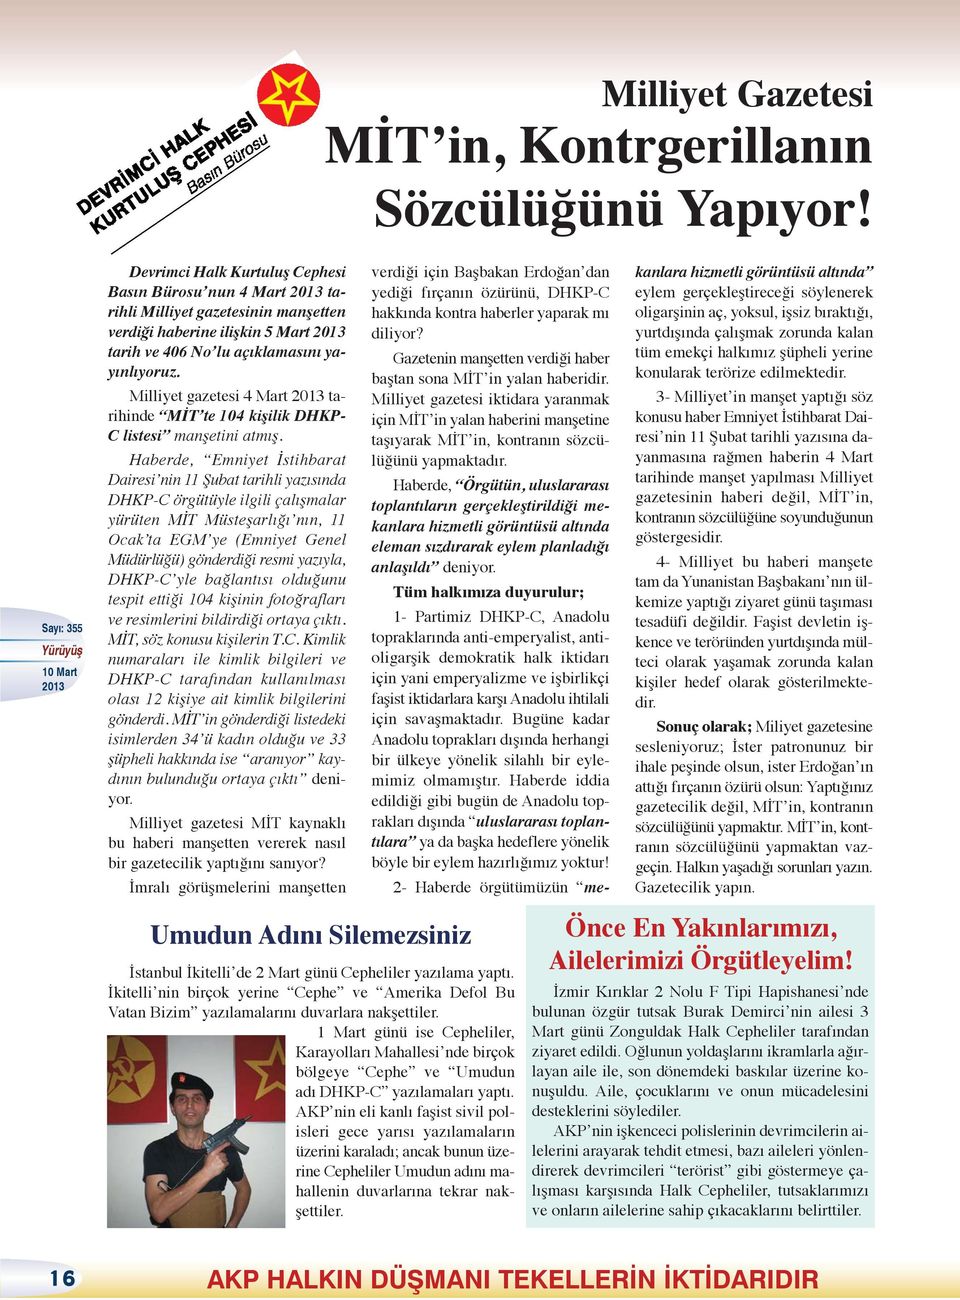 Milliyet gazetesi 4 Mart tarihinde MİT te 104 kişilik DHKP- C listesi manşetini atmış.